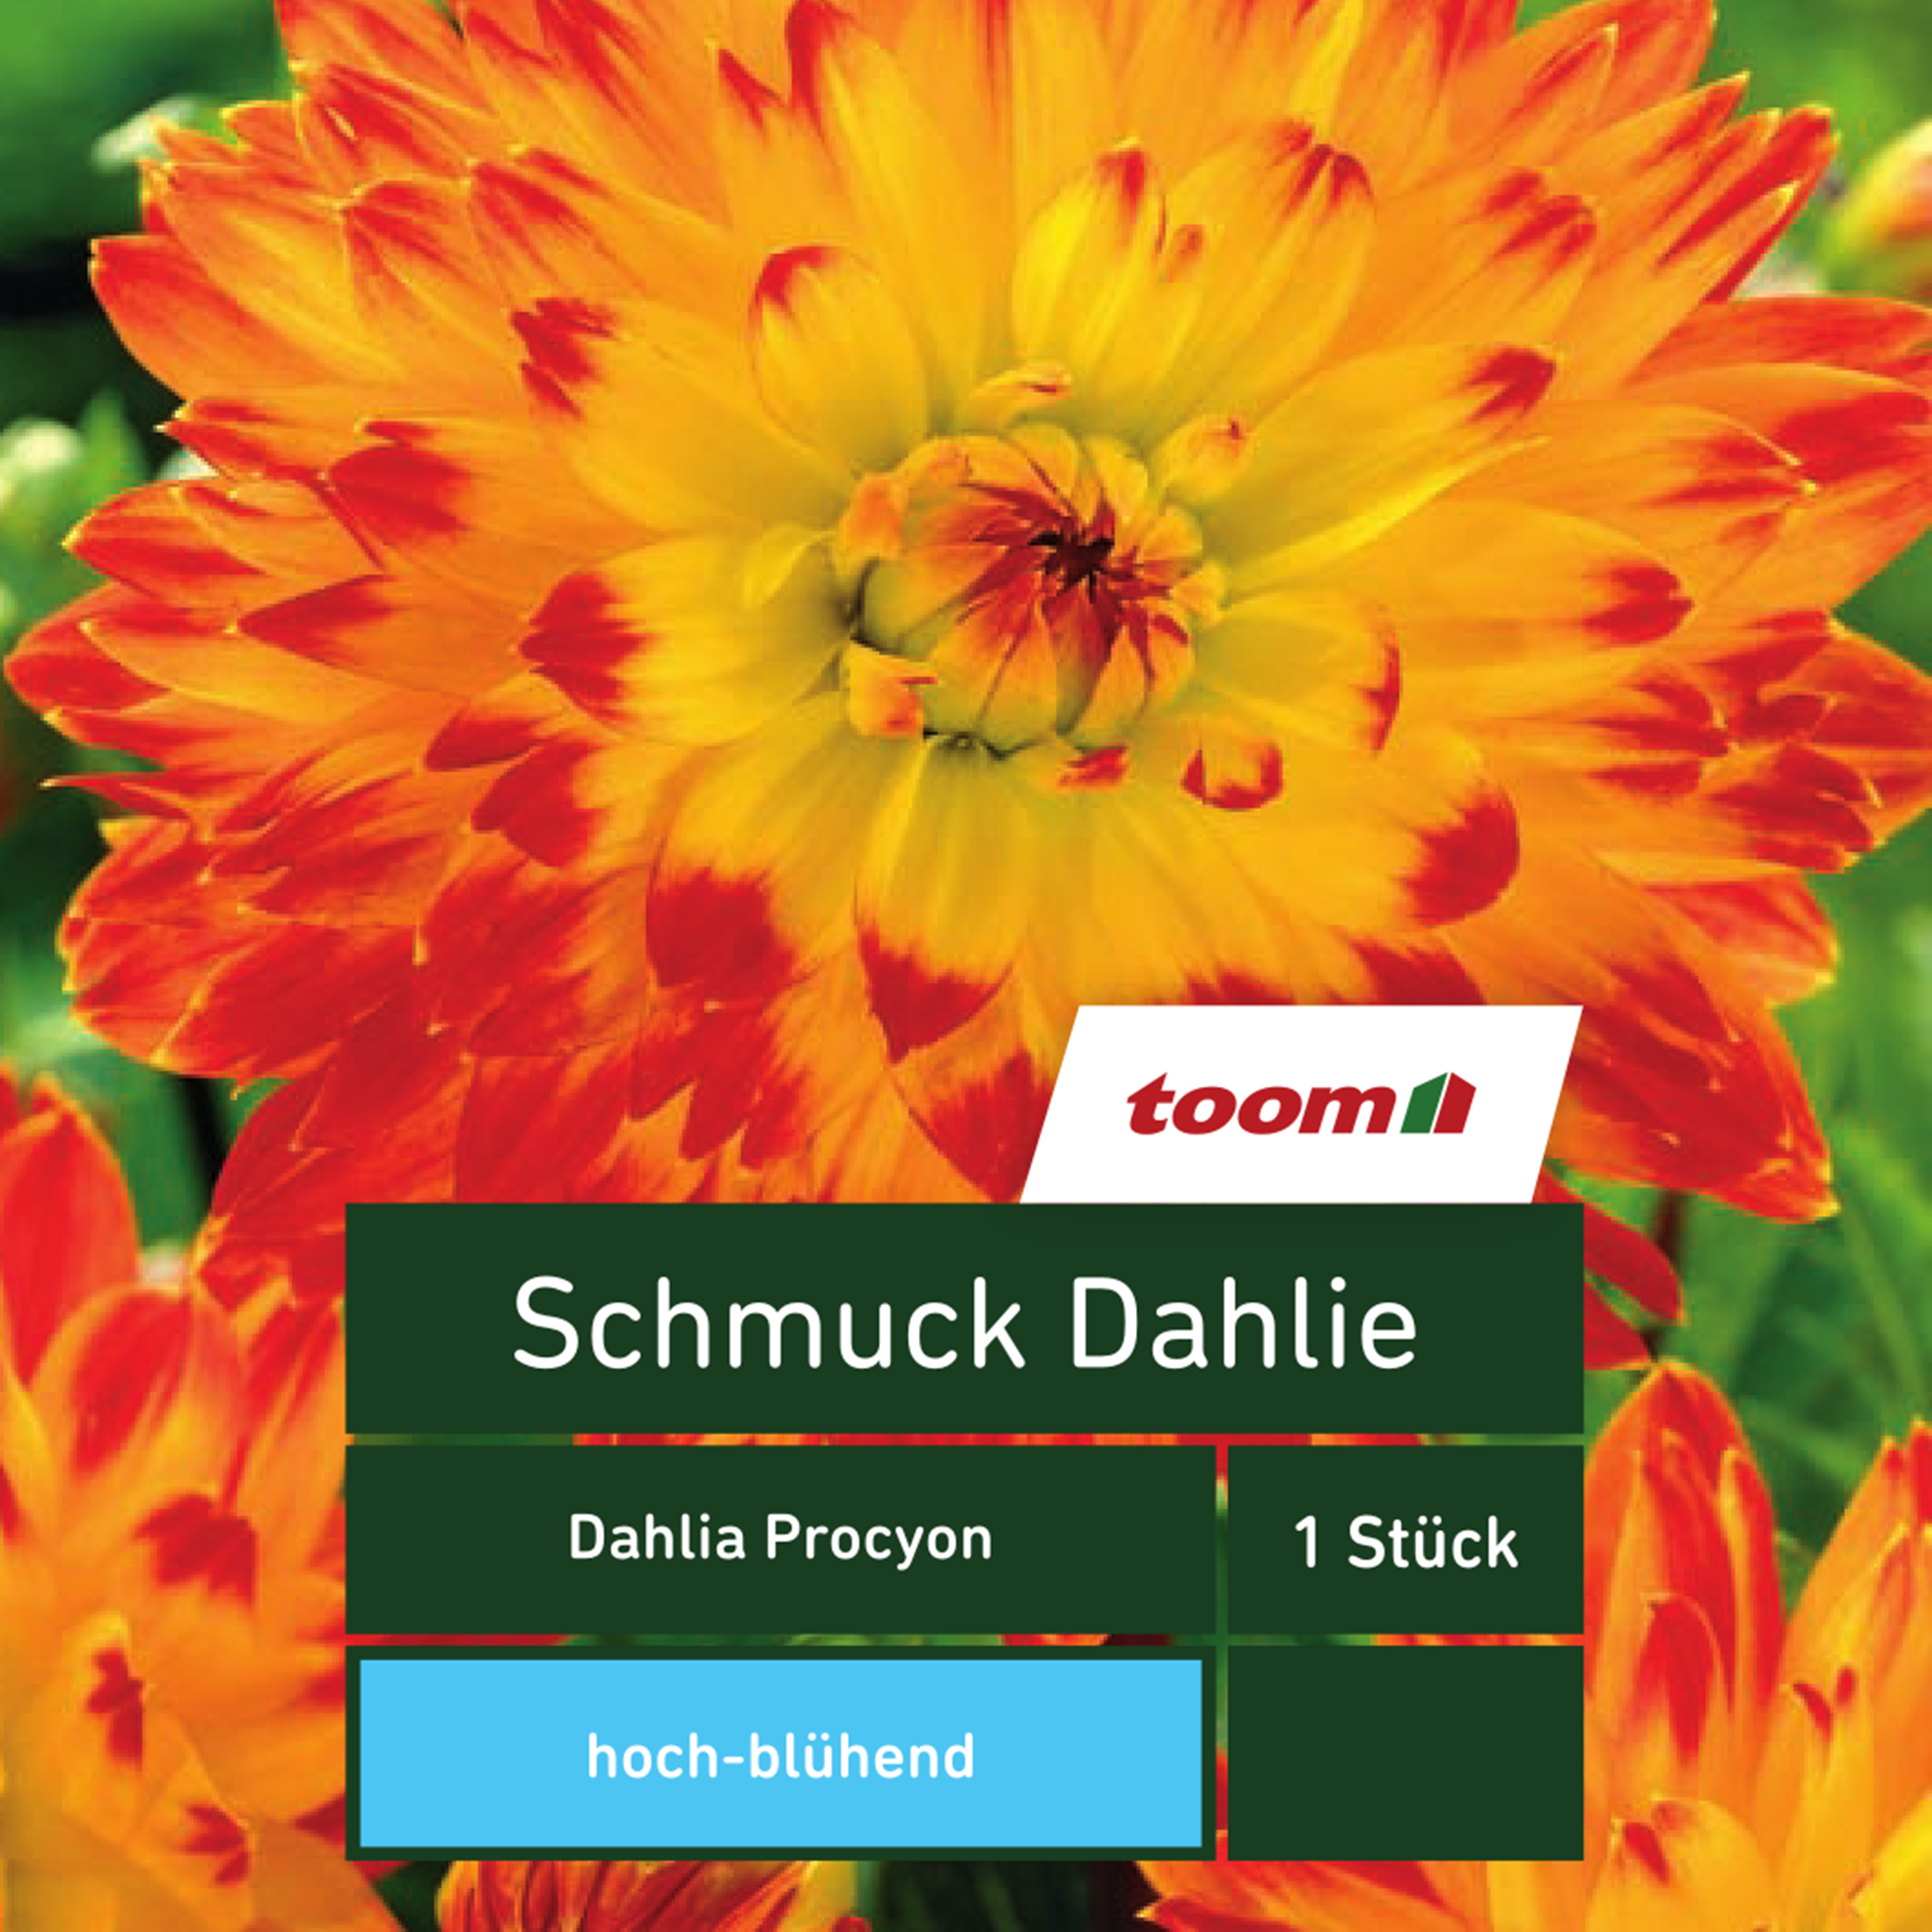 toom Schmuck-Dahlie 'Dahlia Procyon', 1 Stück, gelb-rot